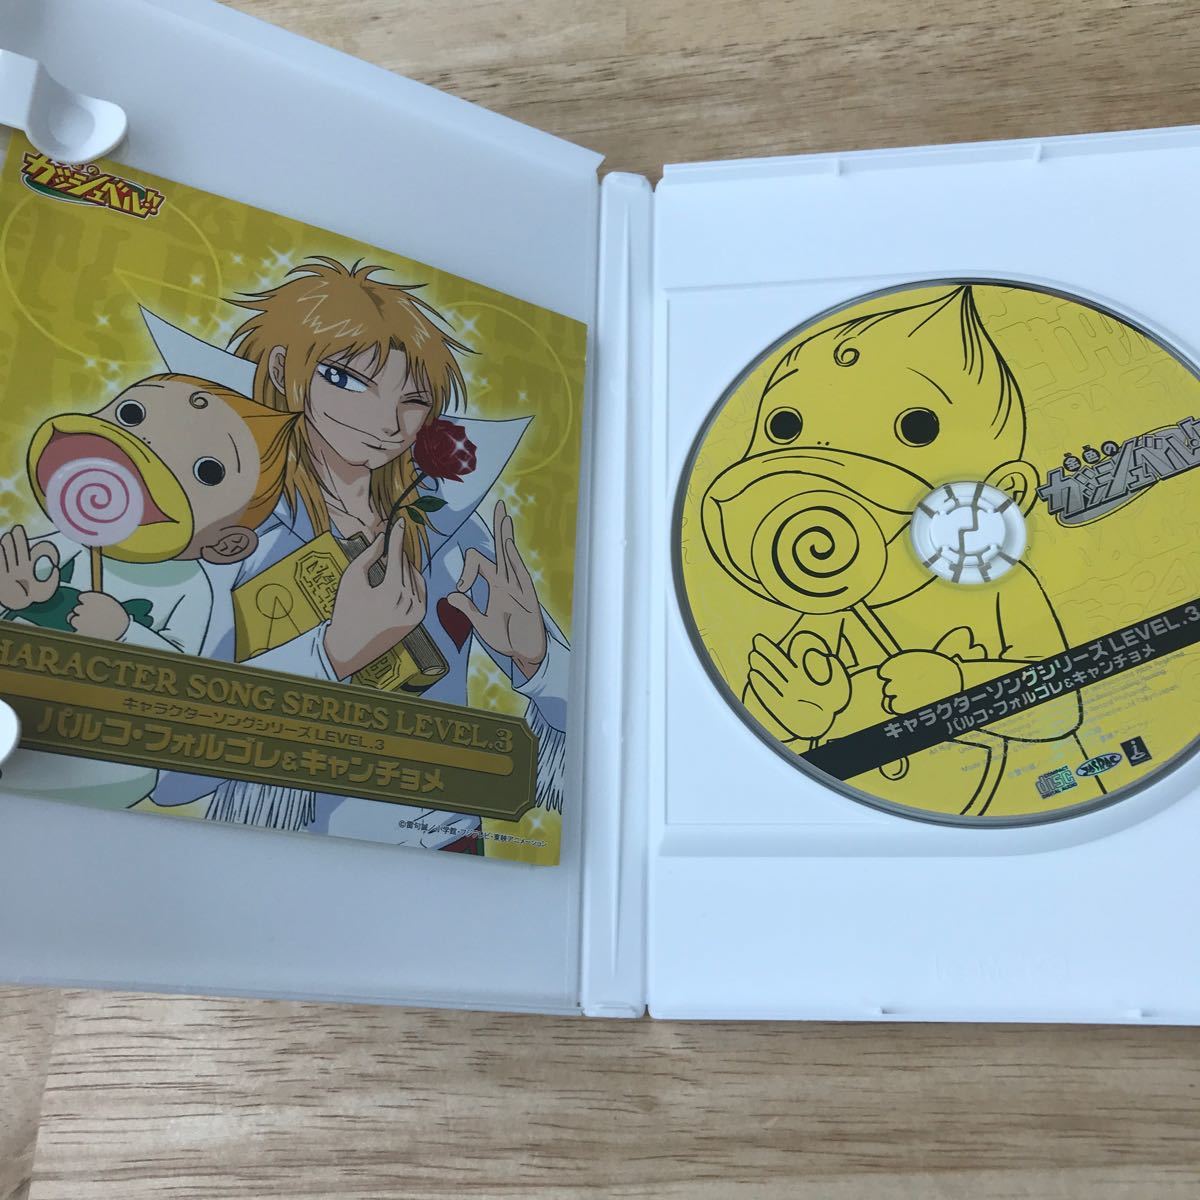 金色のガッシュベル　キャラクターソングシリーズLevel.3 フォルゴレ&キャンチョメ　CD